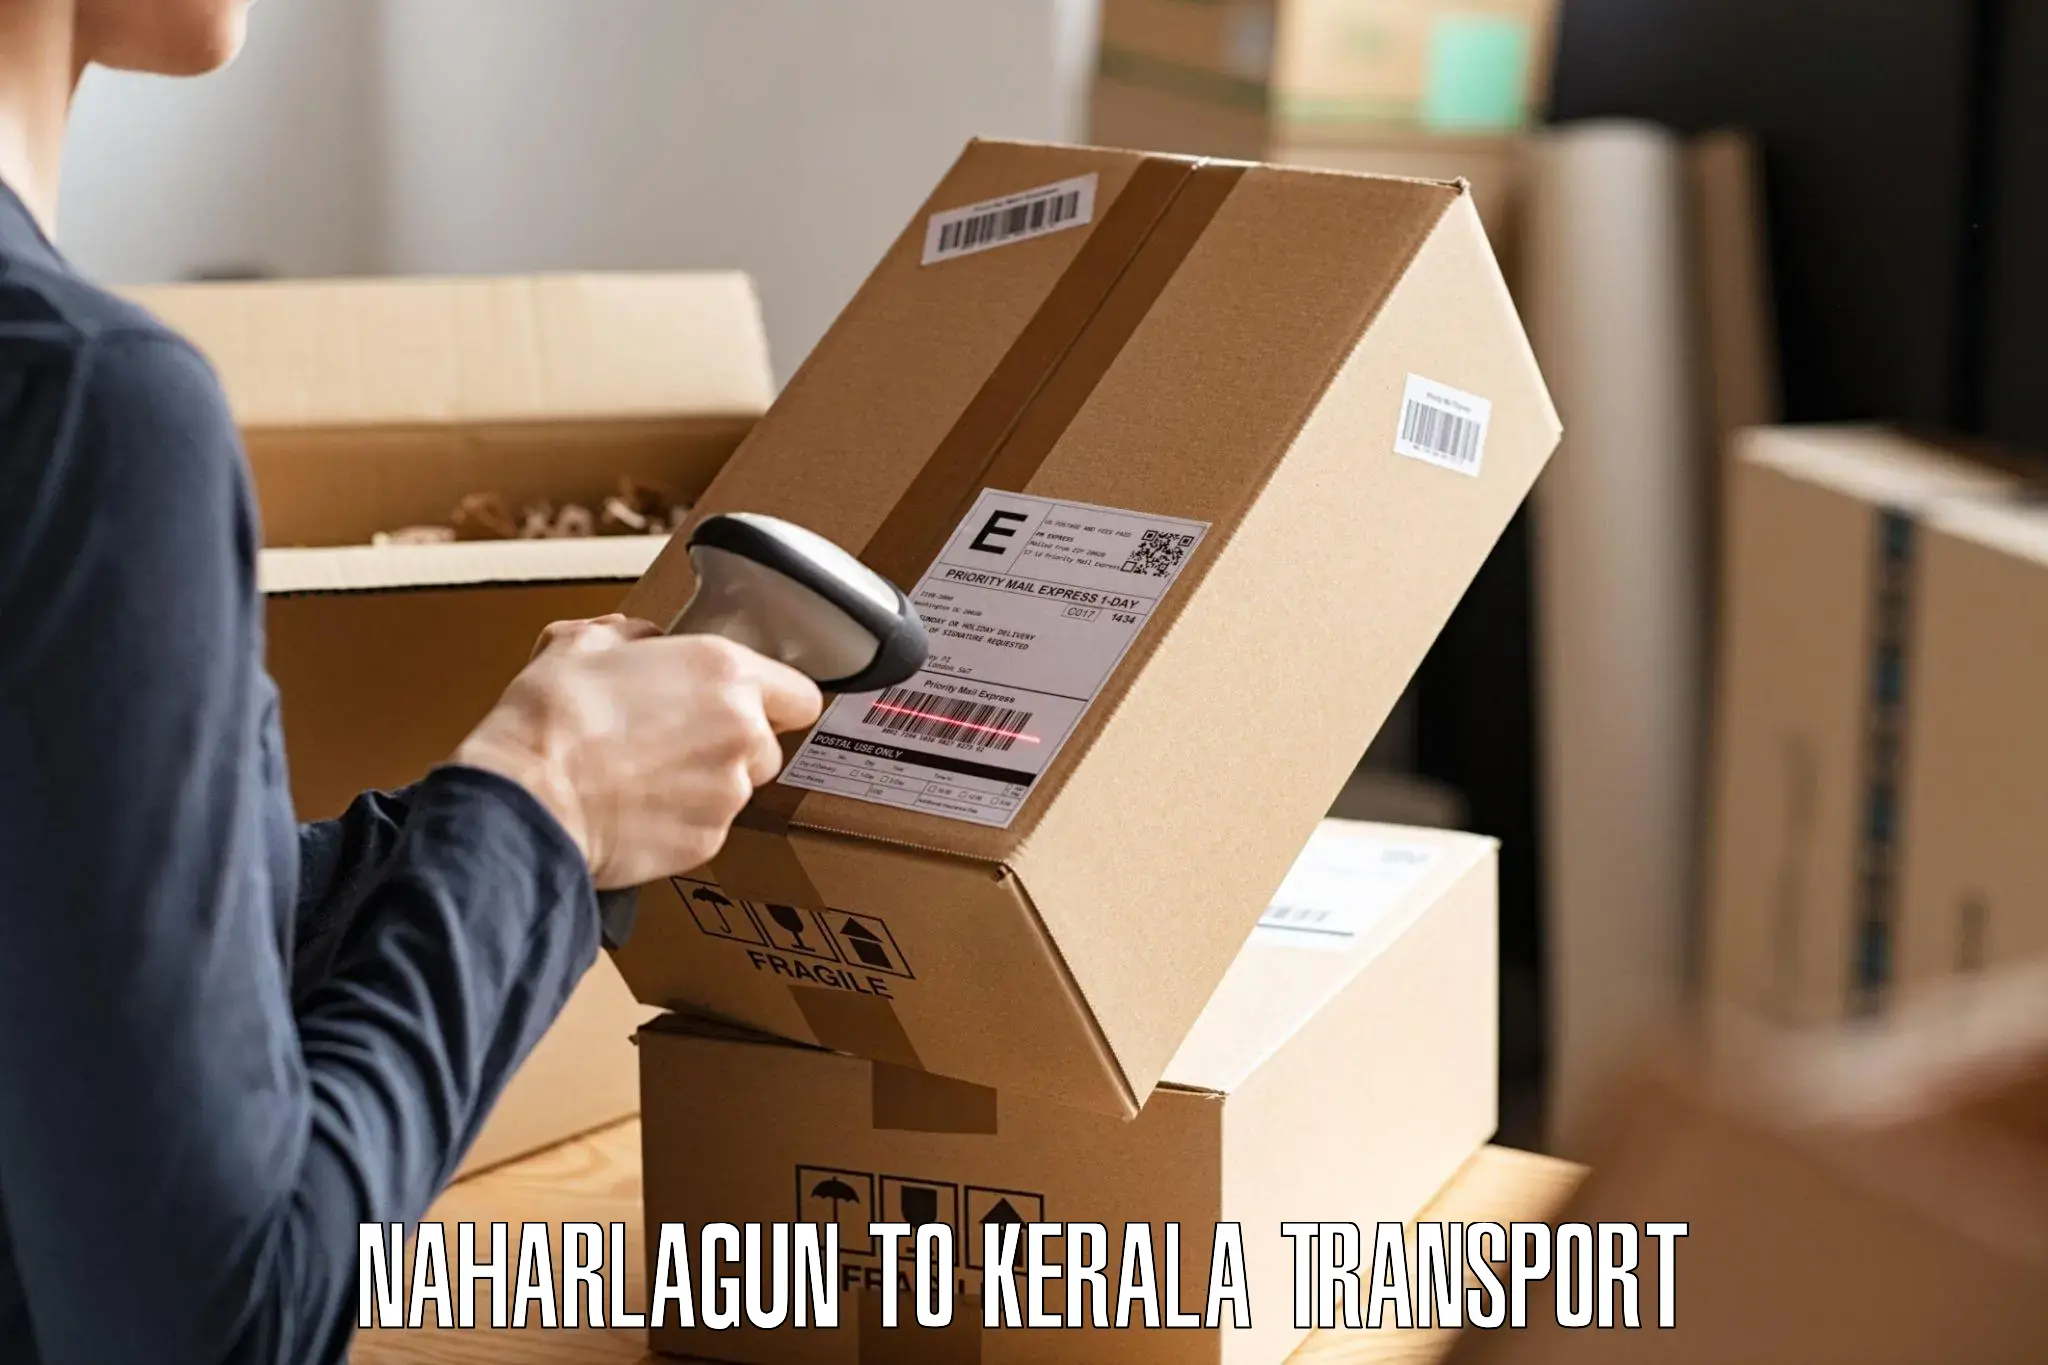 Daily transport service Naharlagun to Kodungallur